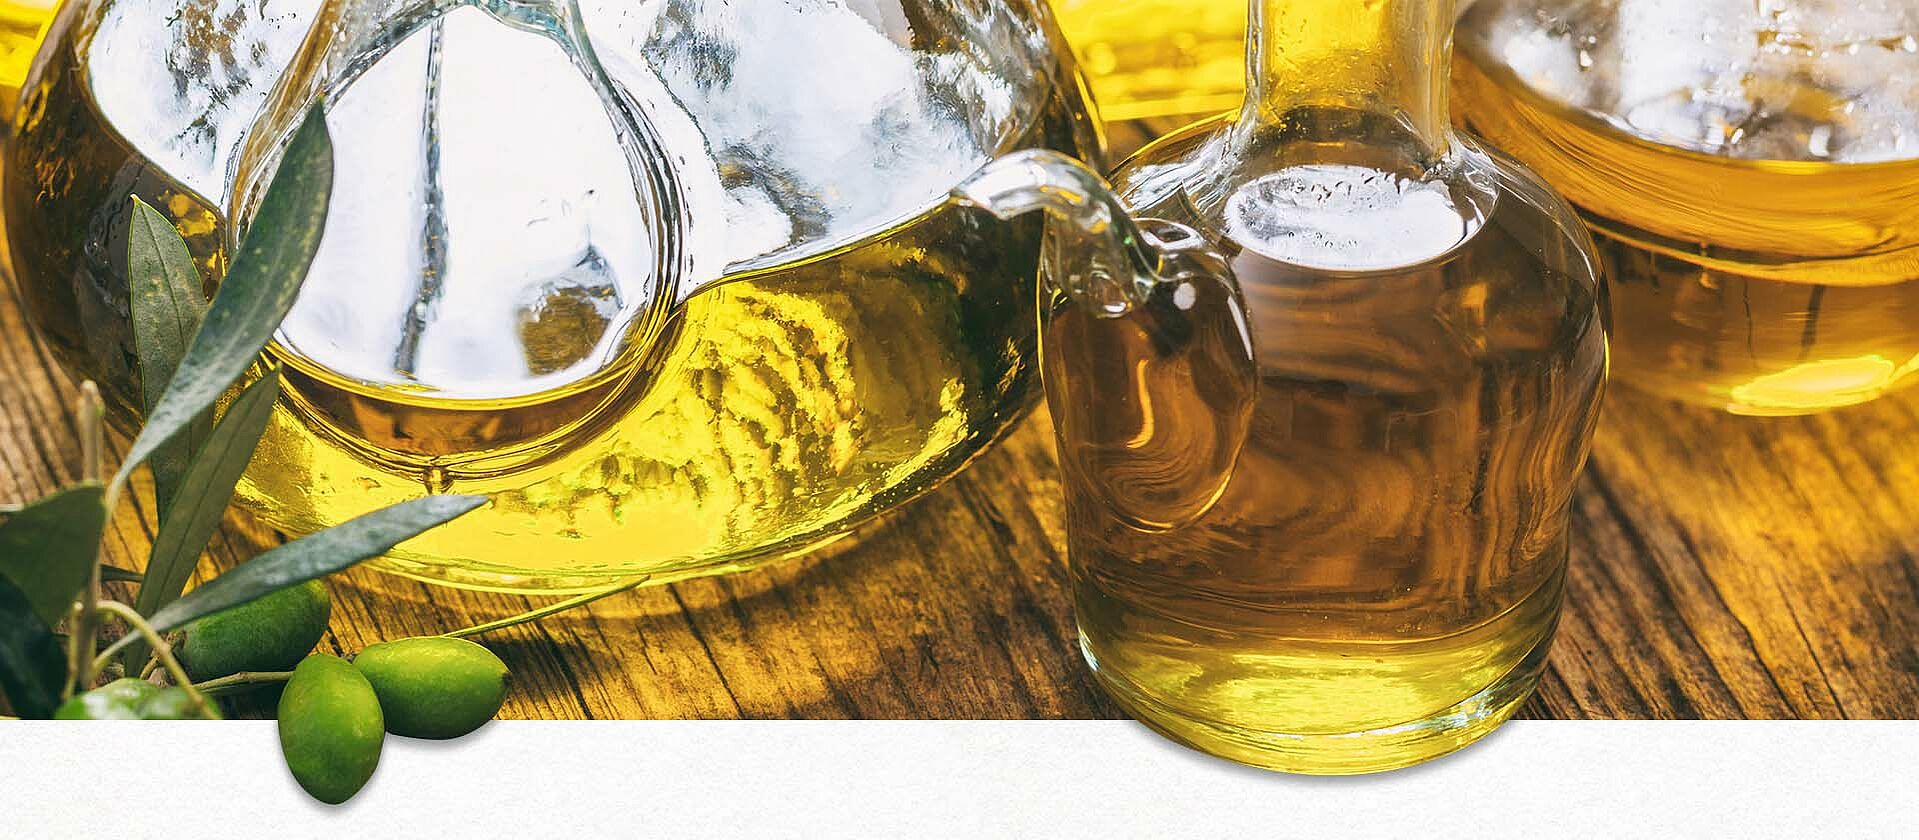 Olivenöl in Flaschen auf einem Tisch